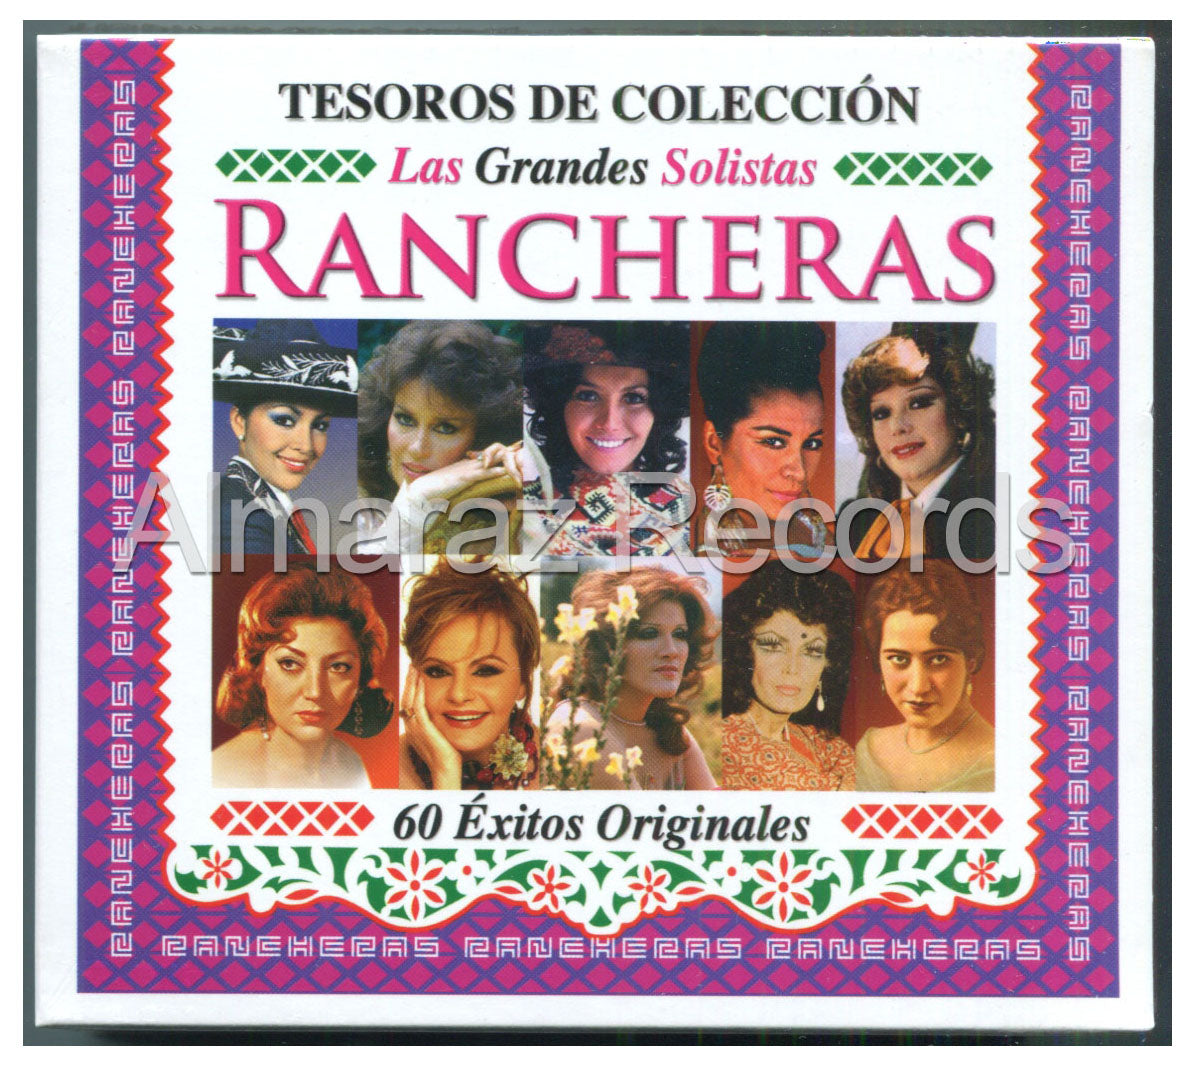 Tesoros De Coleccion Las Grandes Solistas Rancheras 3CD